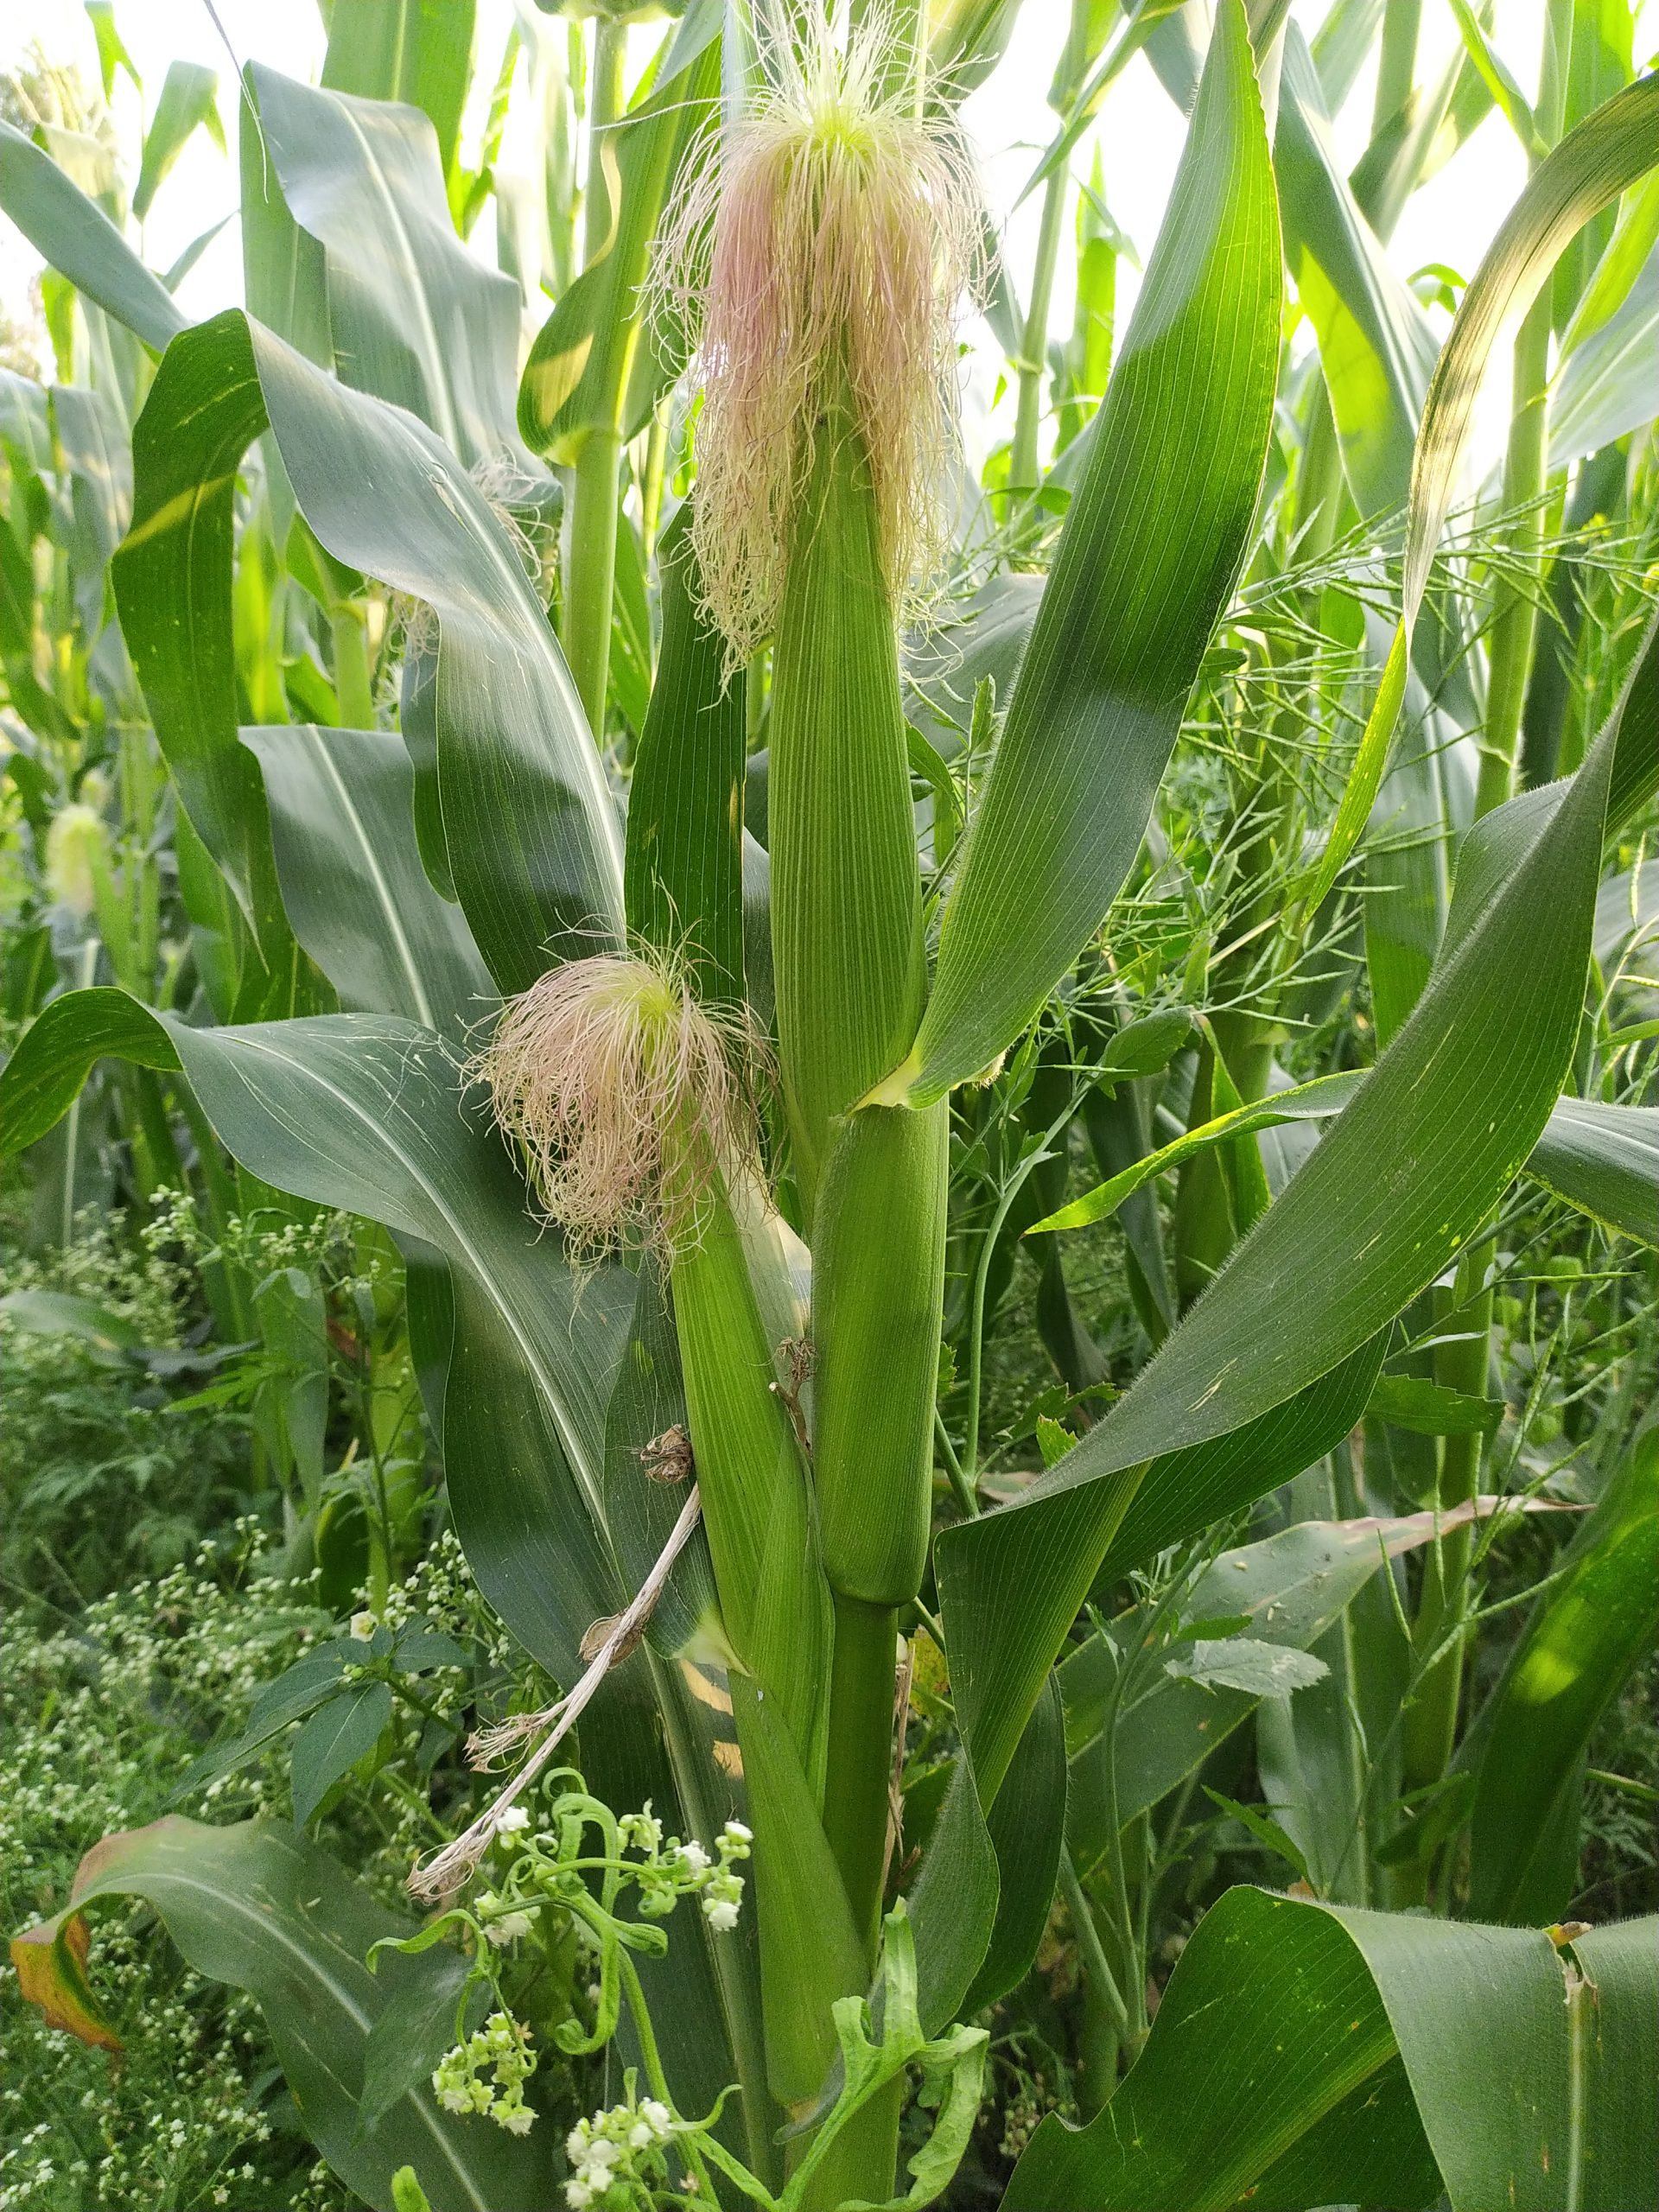 Maize plants in a field